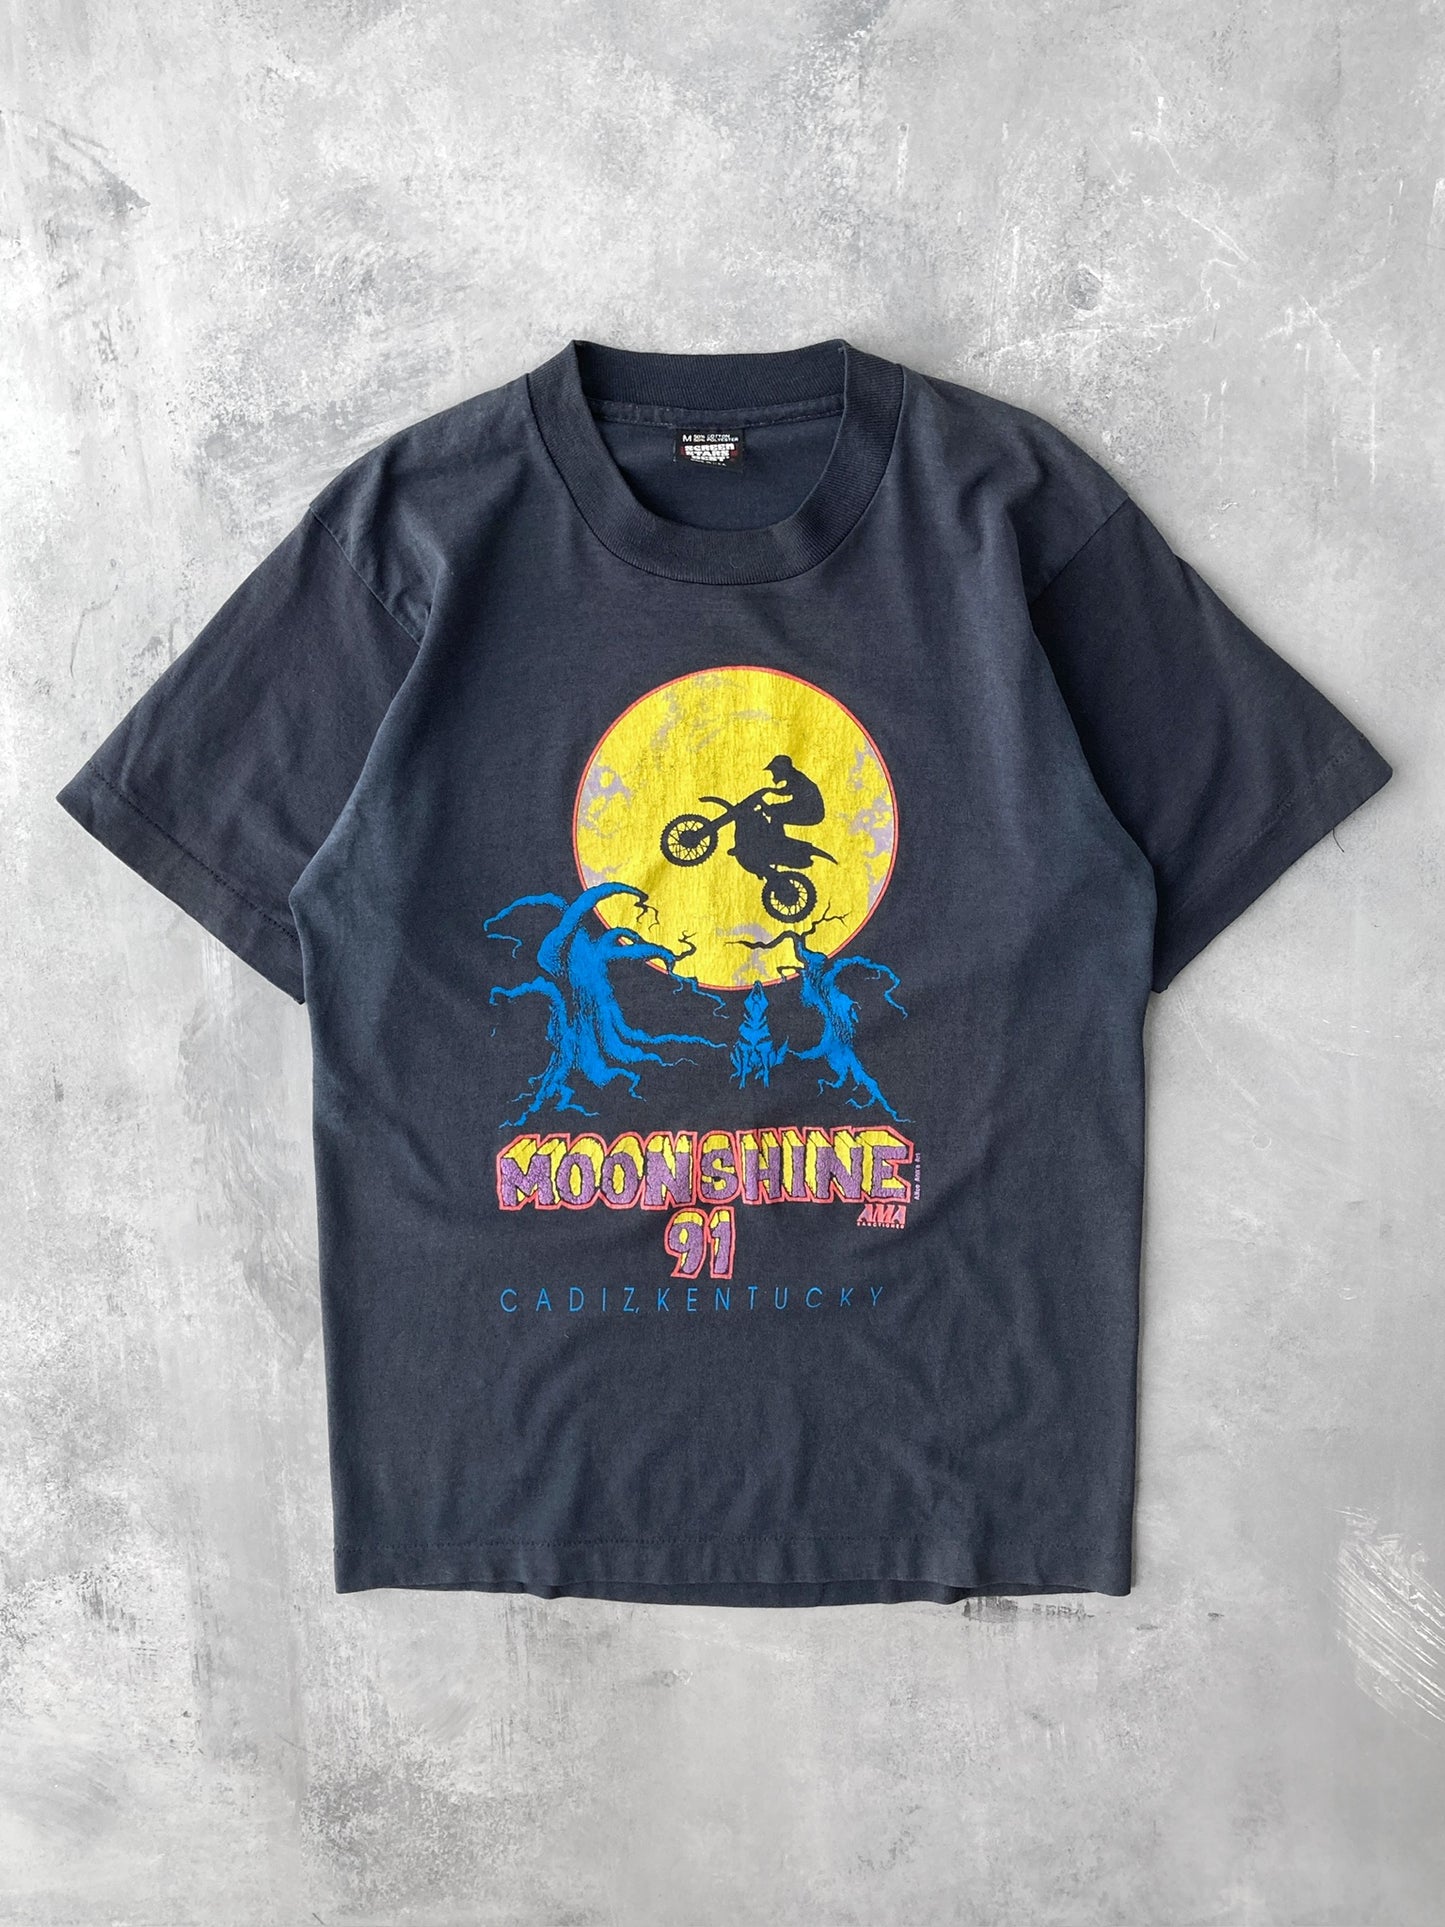 Moonshine Holler Kentucky T-Shirt '91 - Small